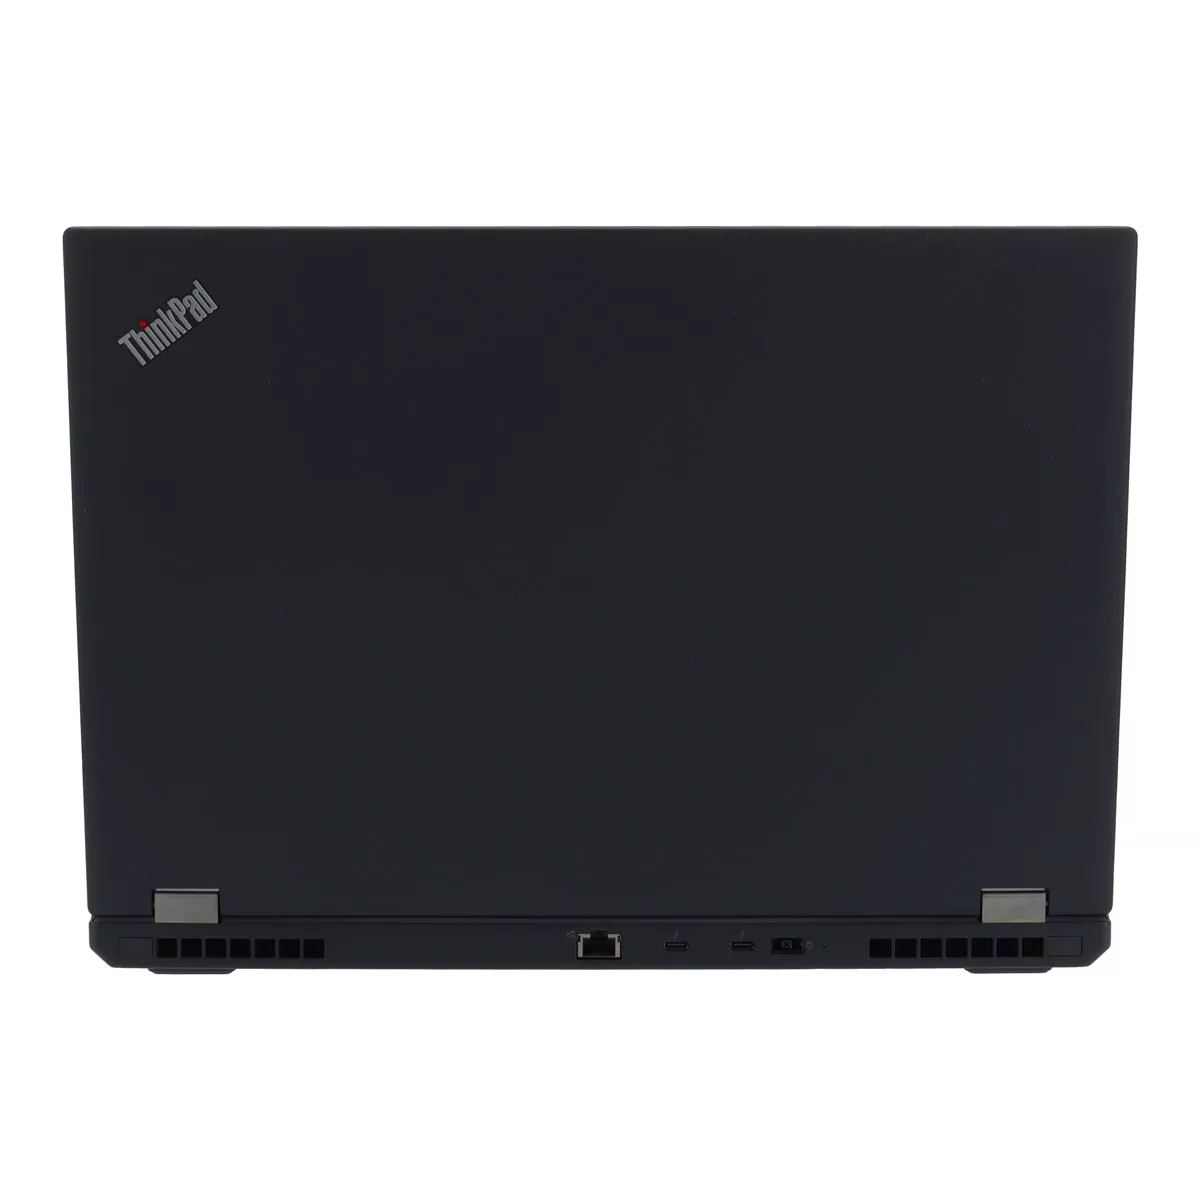 Lenovo ThinkPad P15 G1 Core i7 10750H nVidia Quadro T1000M 16 GB 1 TB M.2 nVME SSD Webcam A+